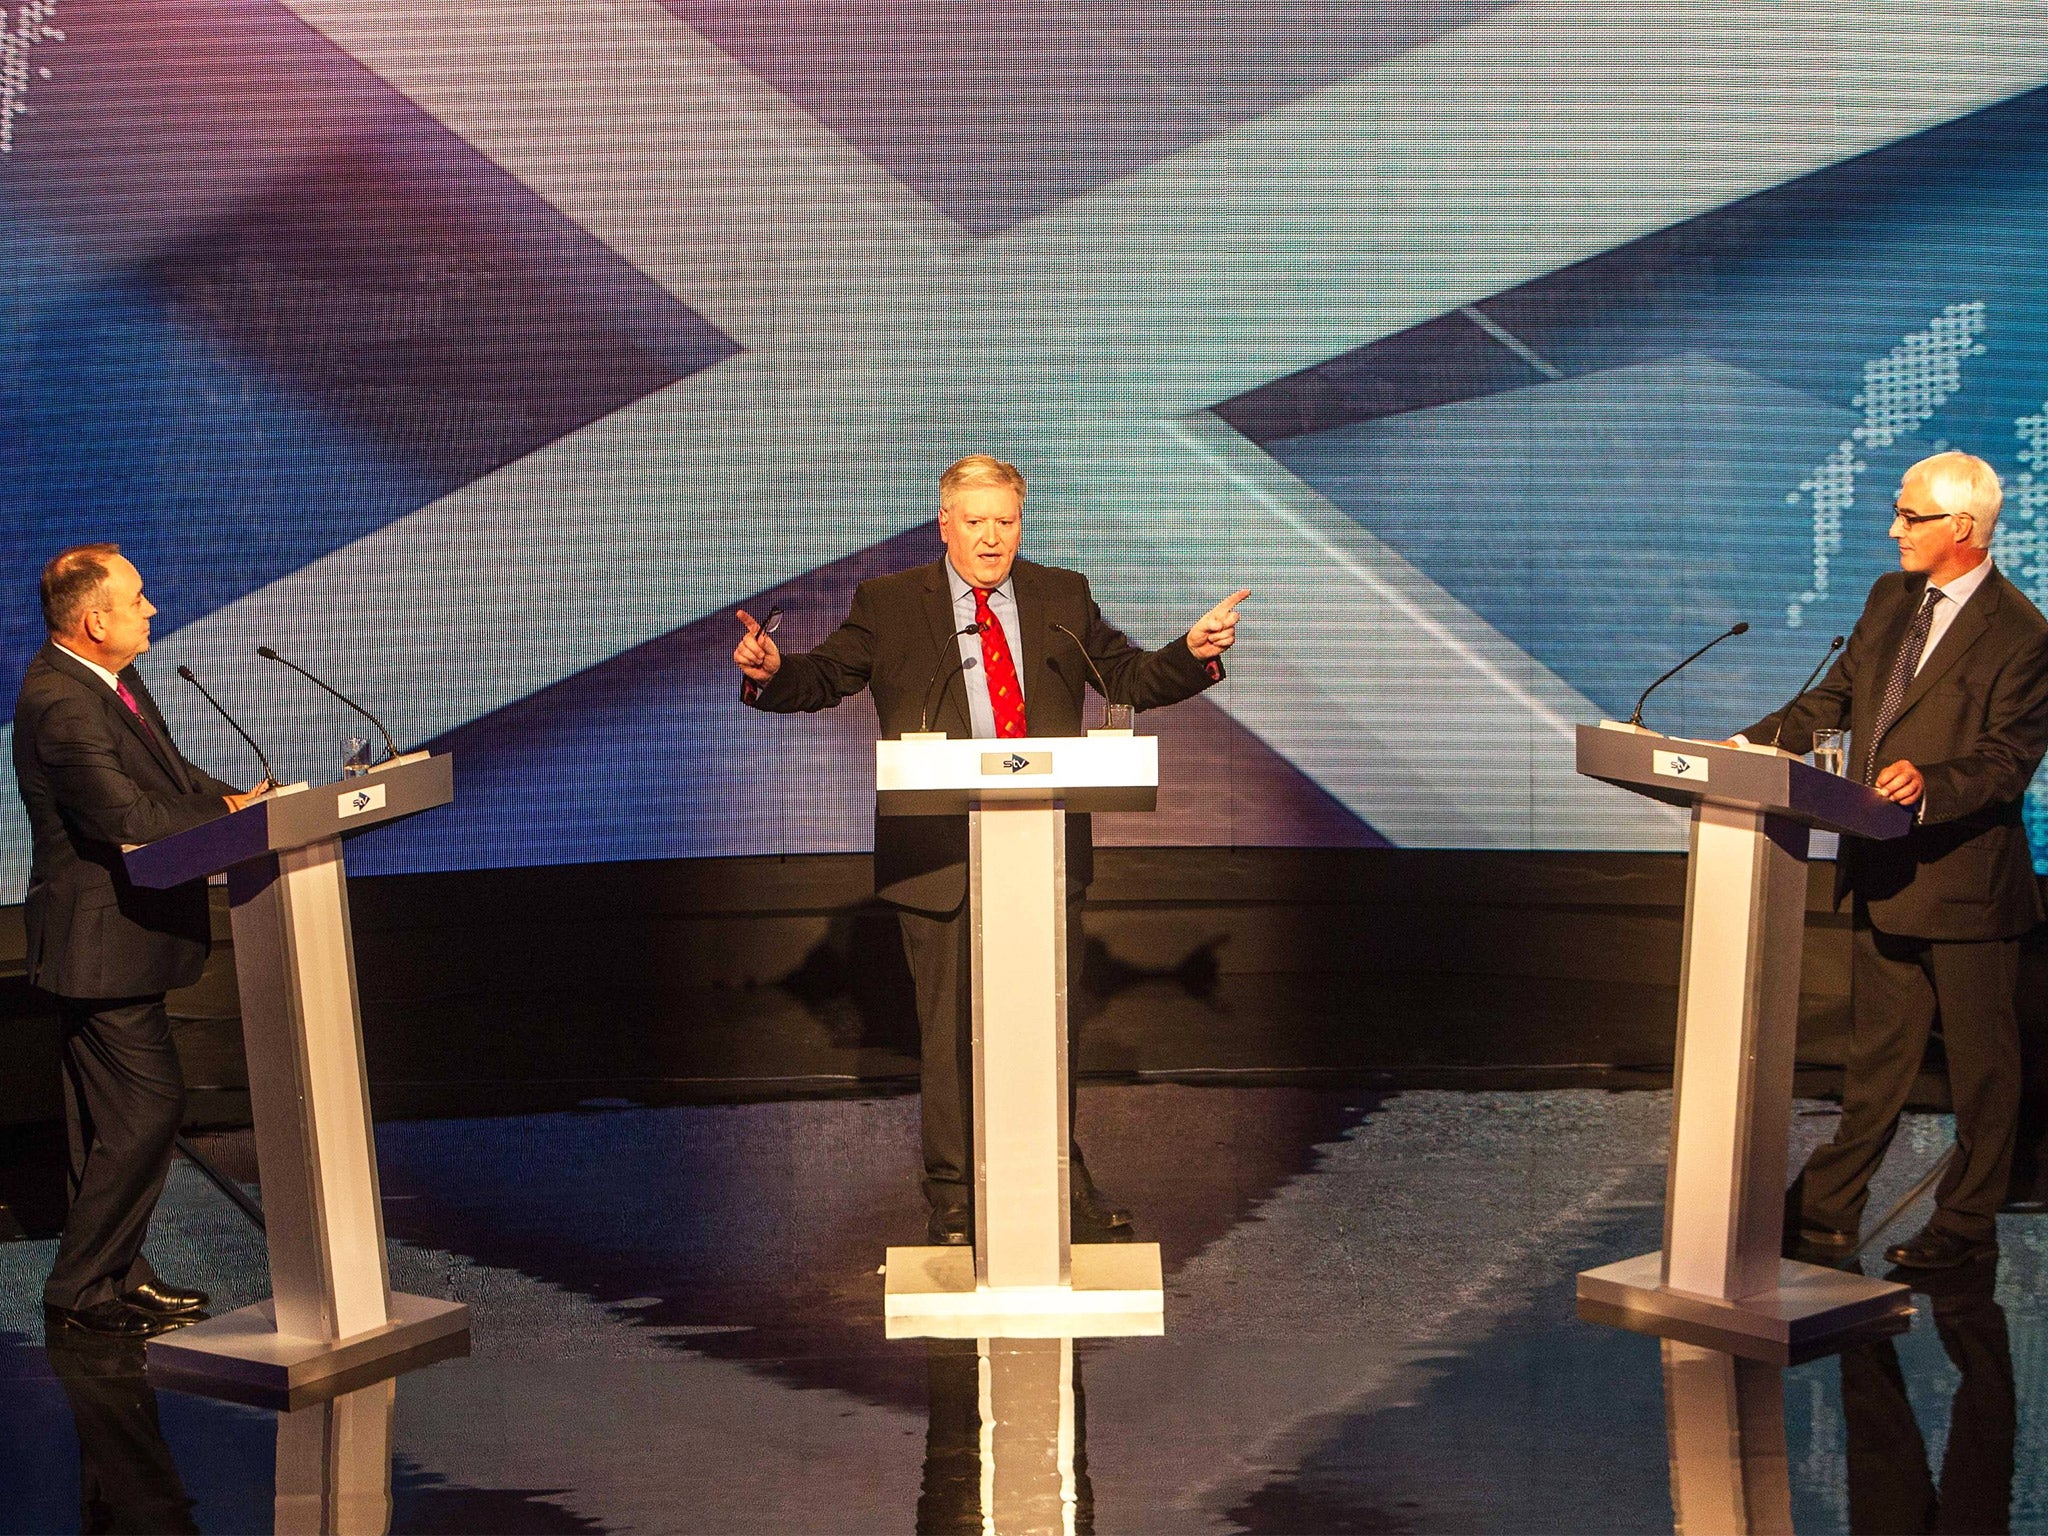 Host Bernard Ponsonby stands between Alex Salmond and Alistair Darling during the televised debate